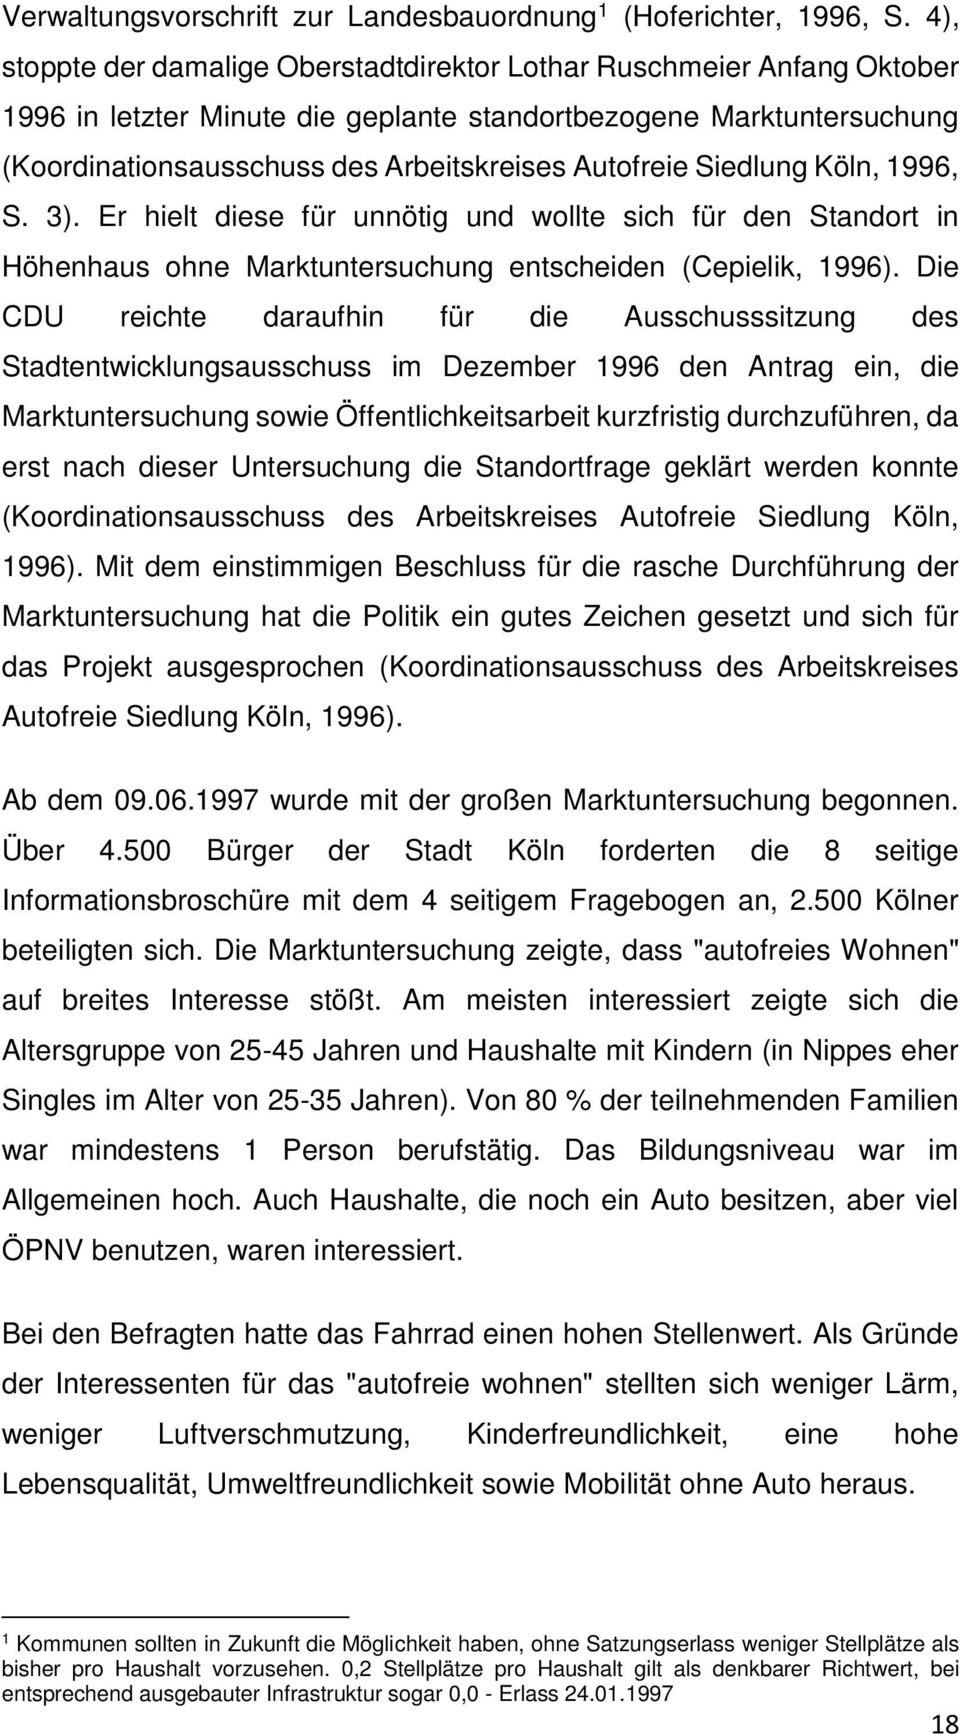 Siedlung Köln, 1996, S. 3). Er hielt diese für unnötig und wollte sich für den Standort in Höhenhaus ohne Marktuntersuchung entscheiden (Cepielik, 1996).